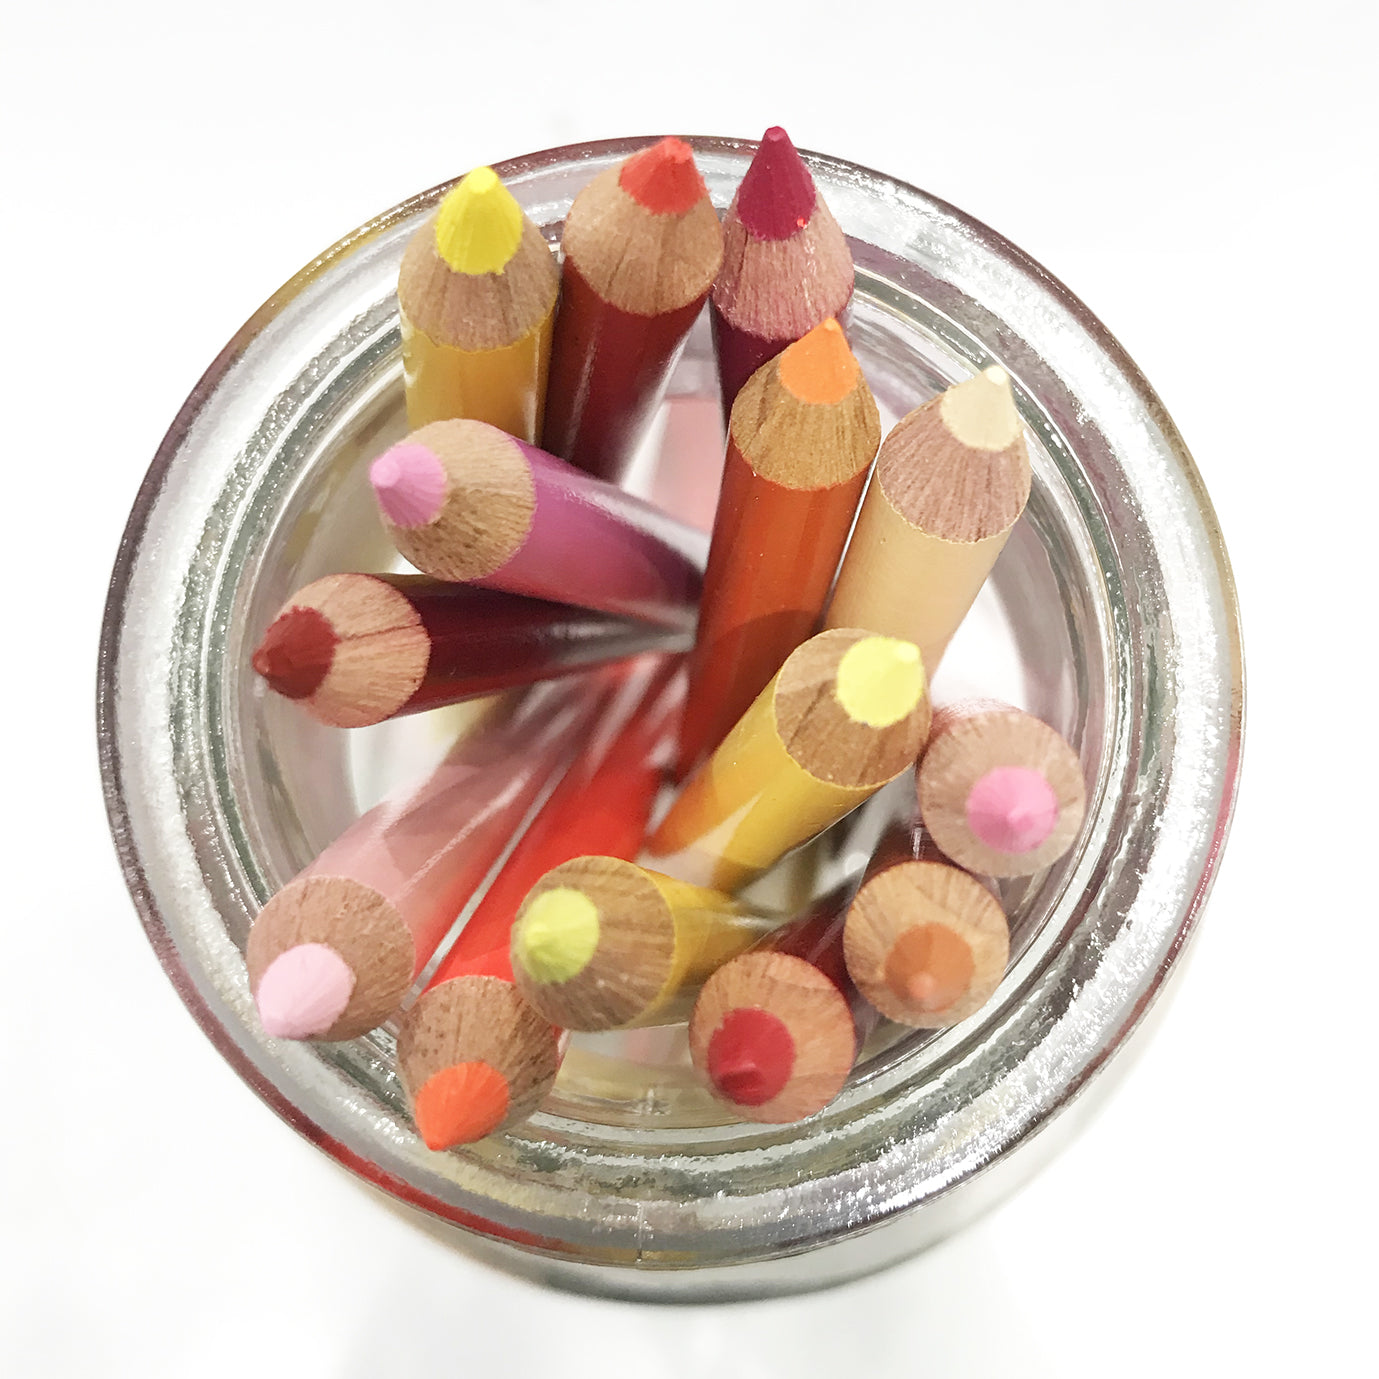 Prismacolor Premier Colored Pencil - Deco Pink 1014 